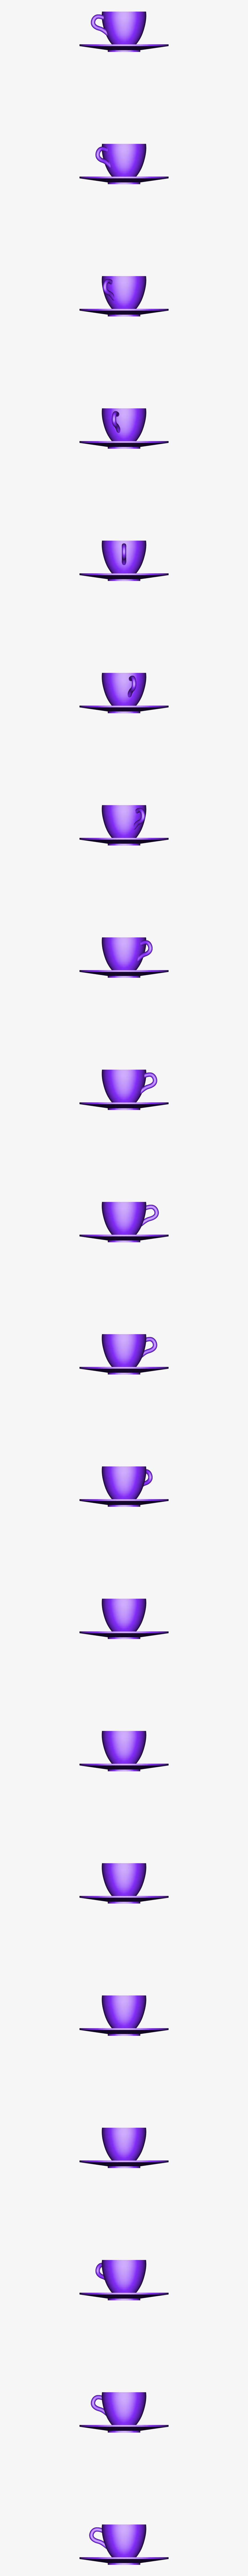 Teacup, Transparent Clipart